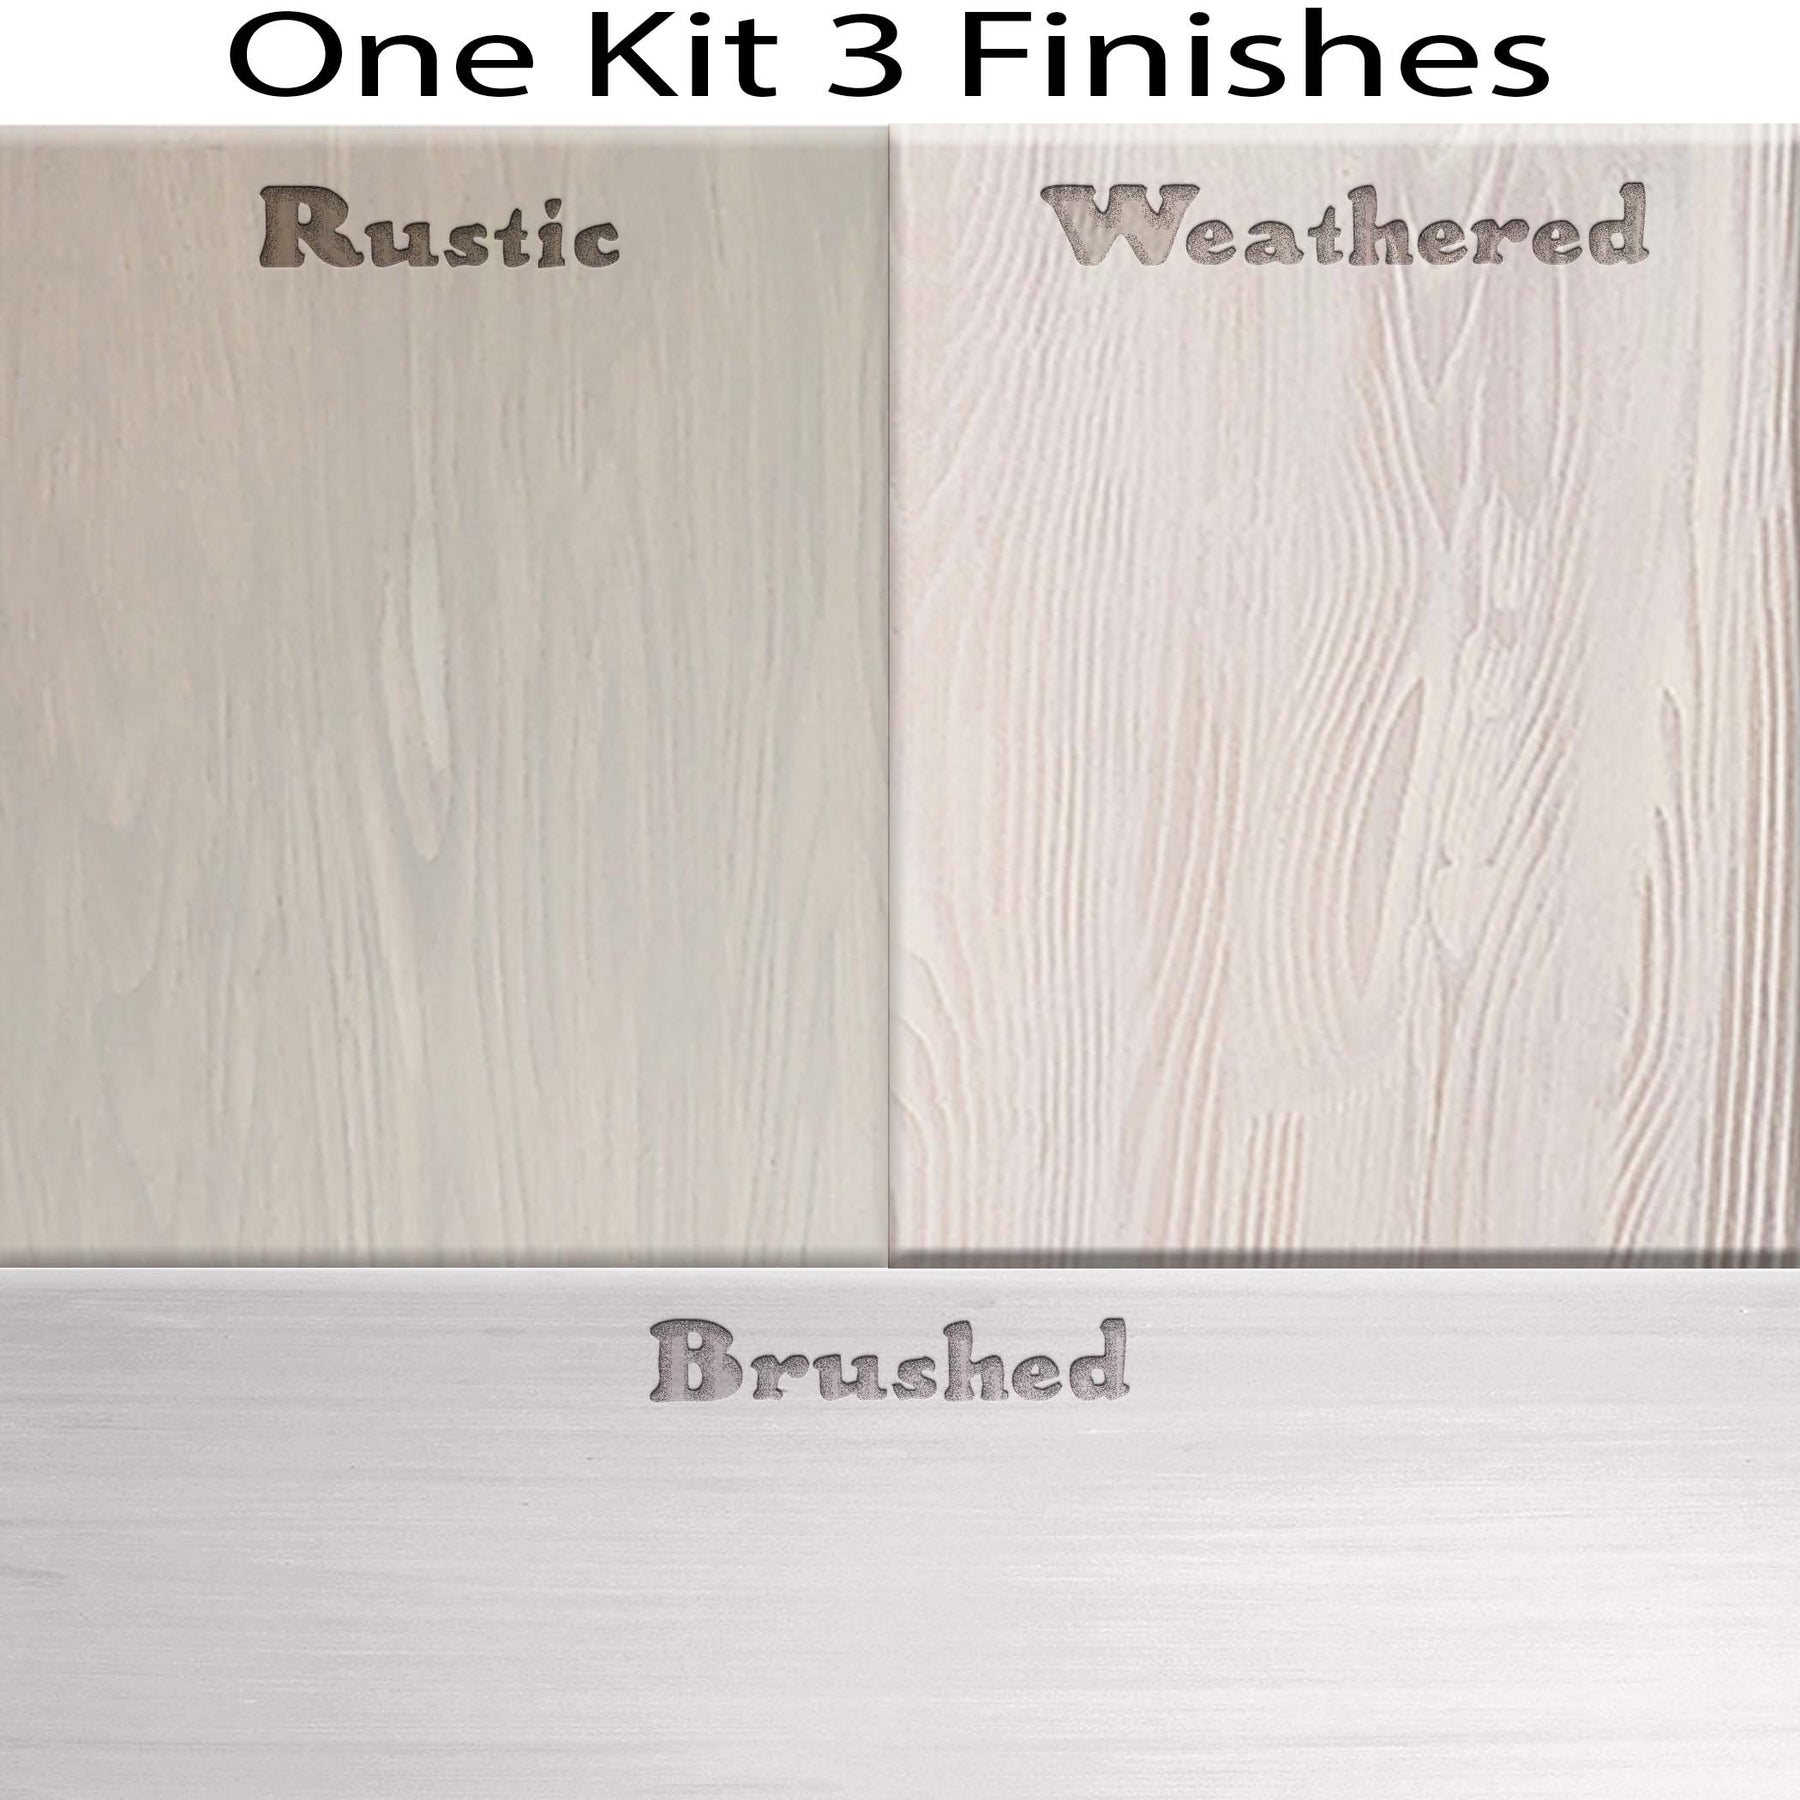 Multi-purpose Wood'n Kit (Large) - White Wash